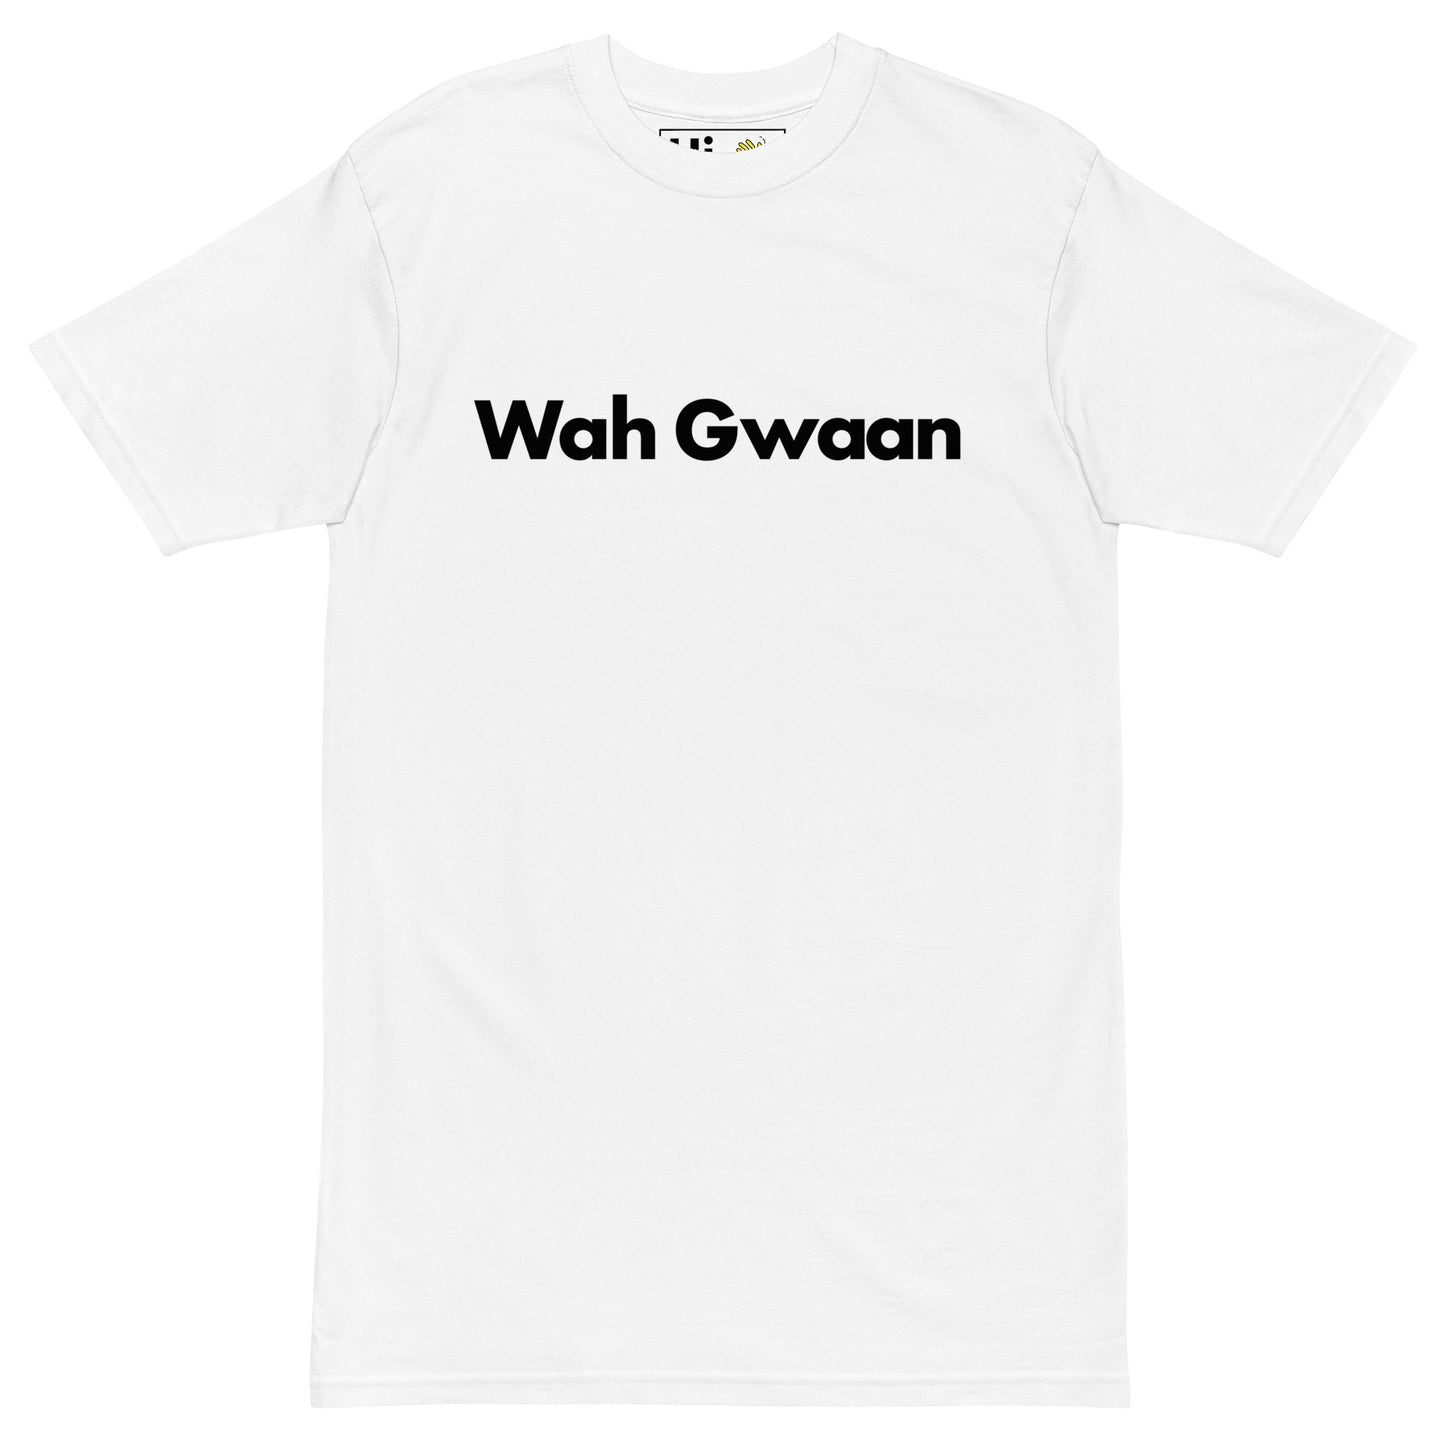 Hi Wah Gwaan Jamaican